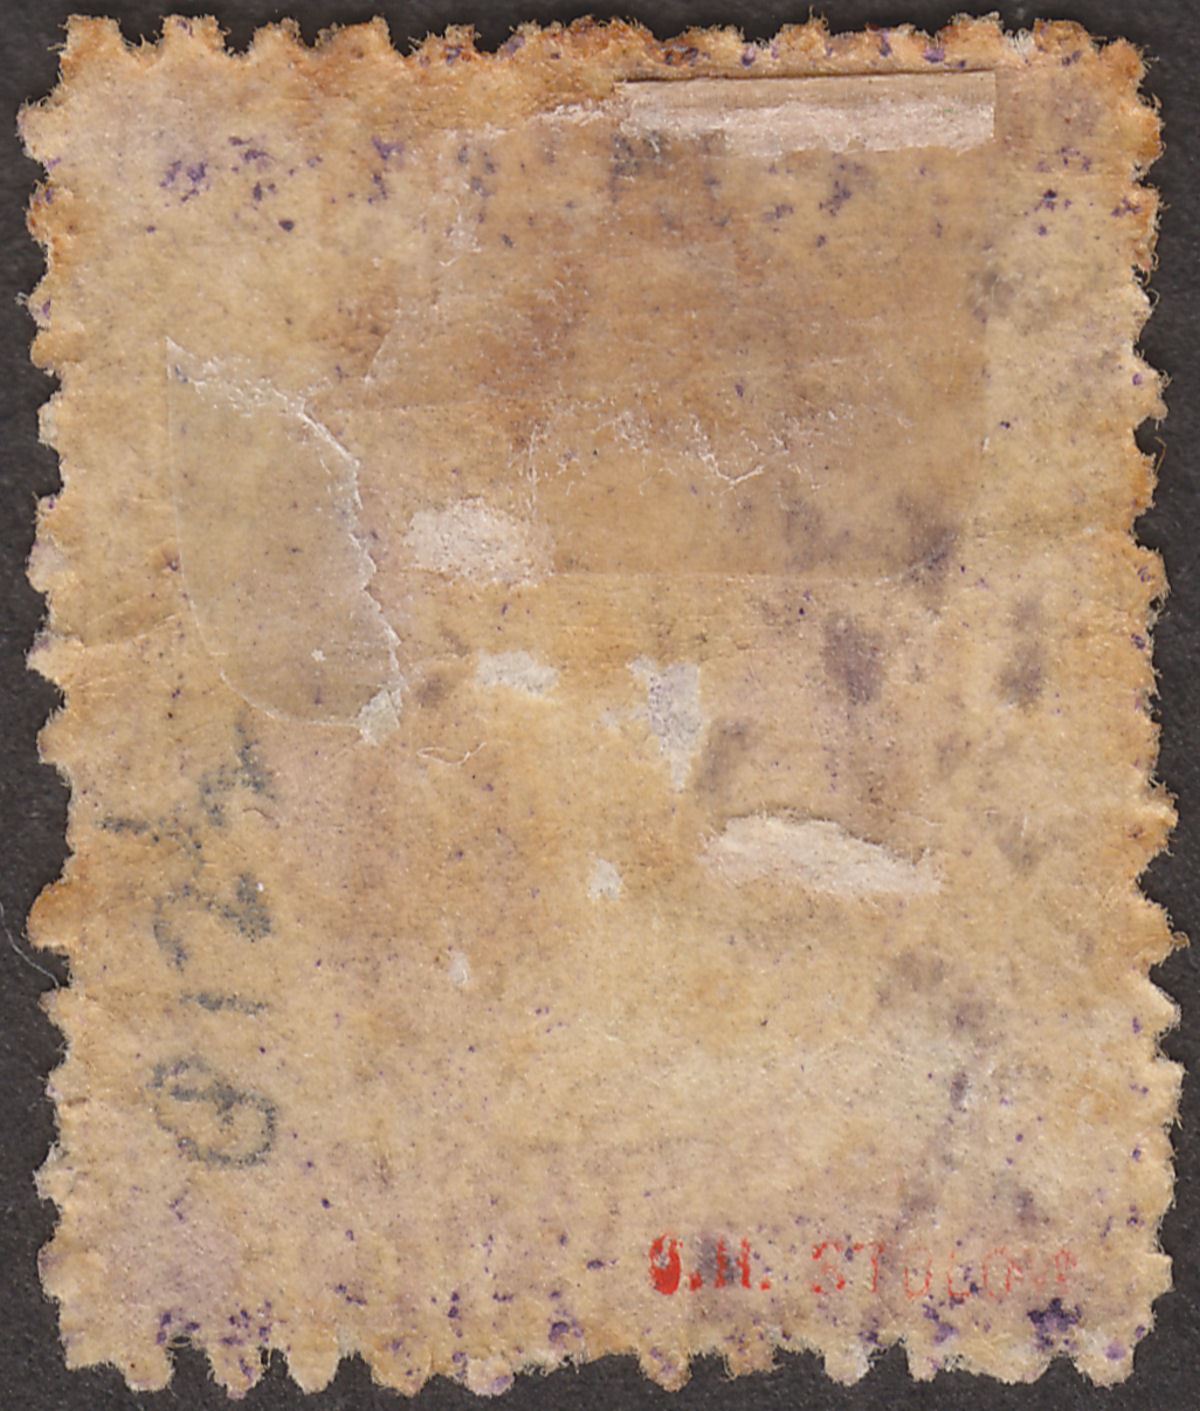 Bahamas 1863 QV Chalon 6d Lilac? perf 12½ Mint* SG30 cat £450